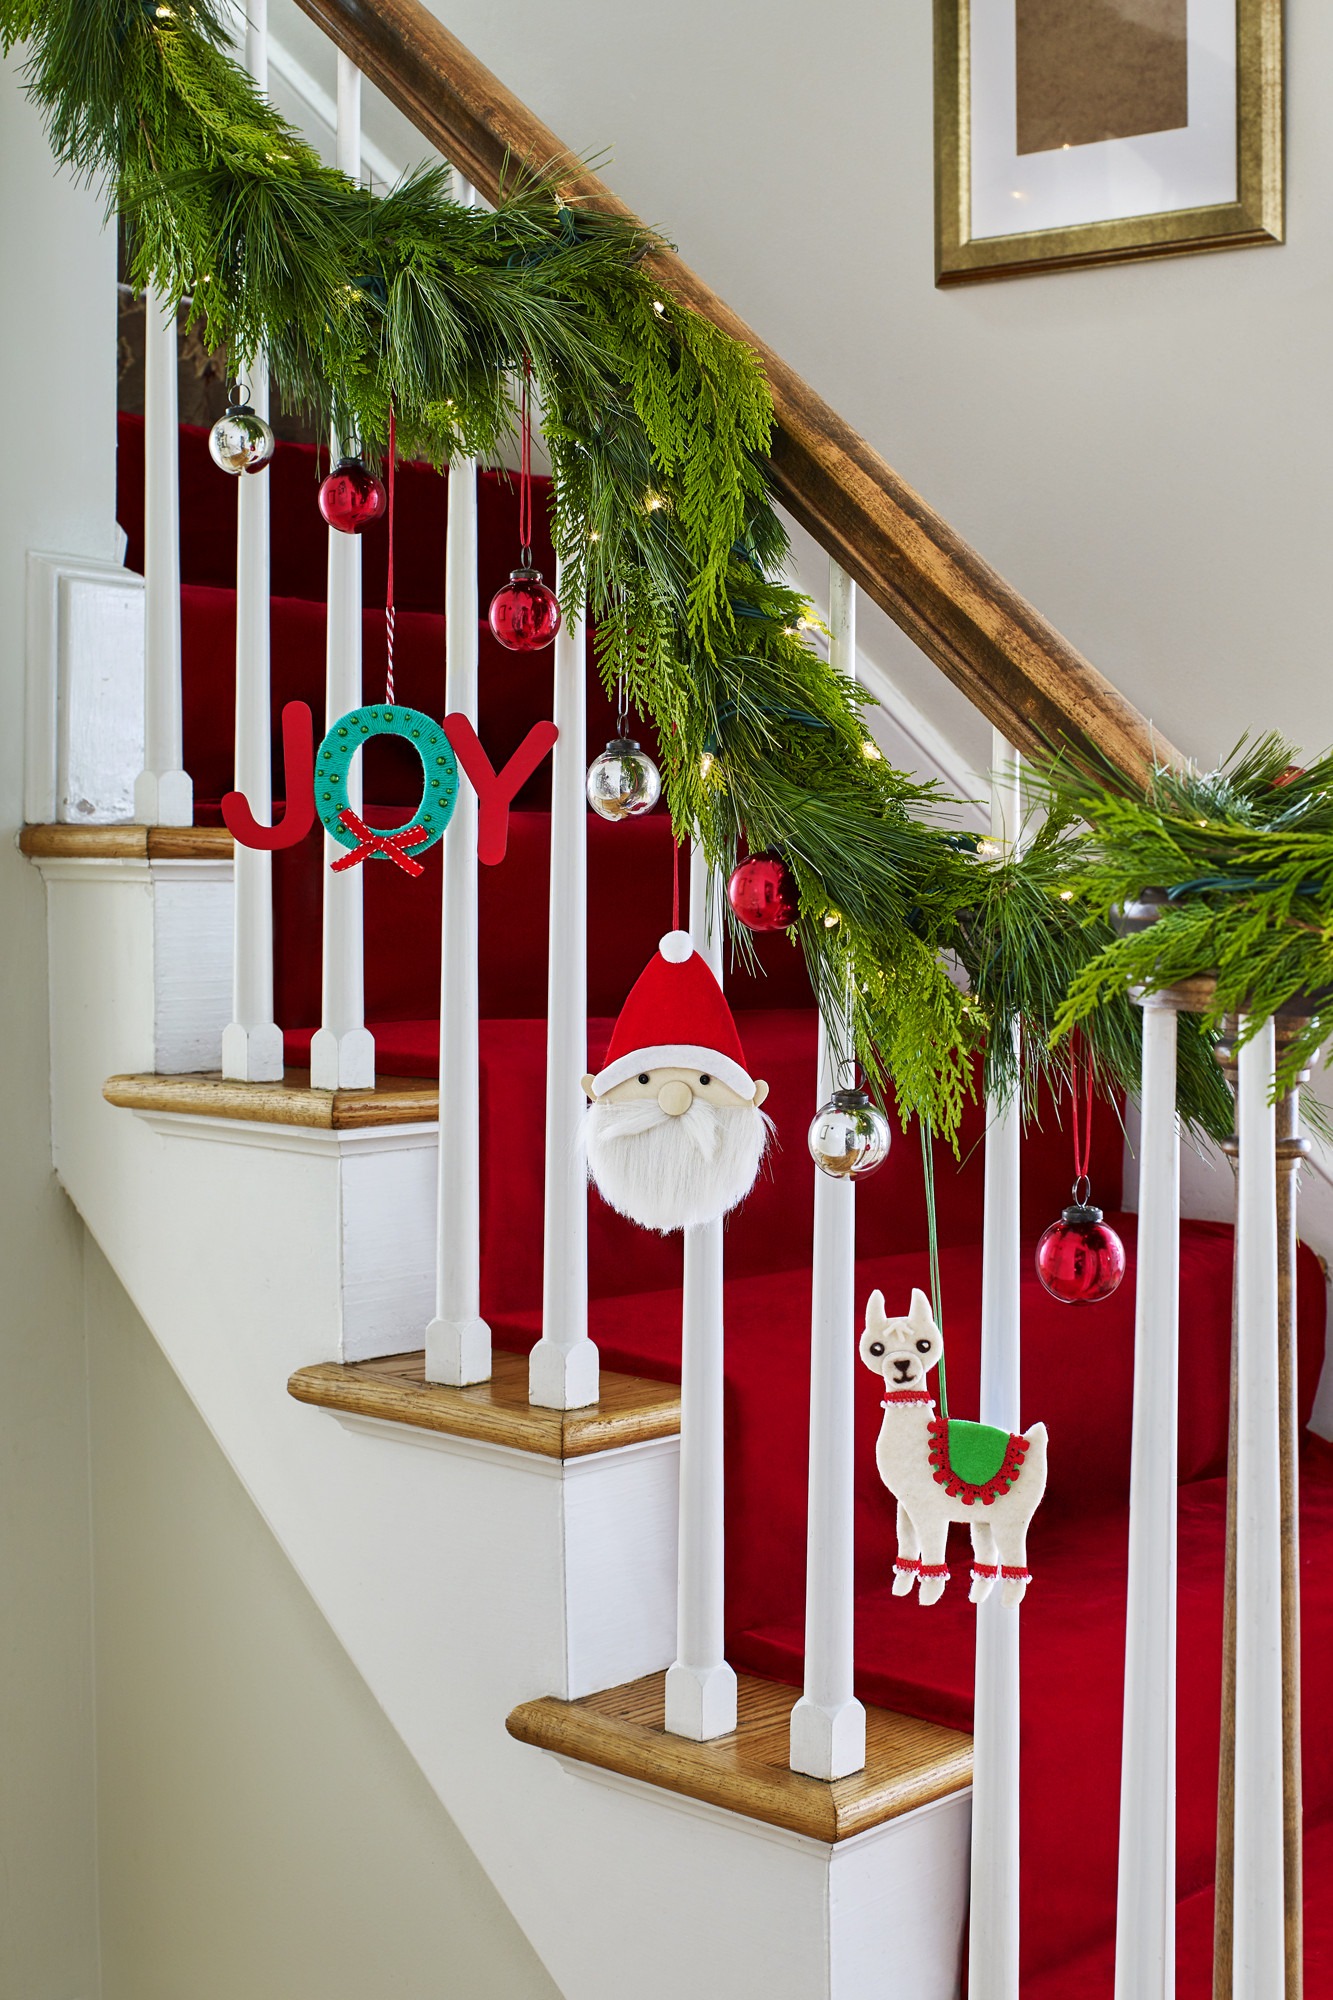 DIY Decorations For Christmas
 32 Homemade DIY Christmas Ornament Craft Ideas How To